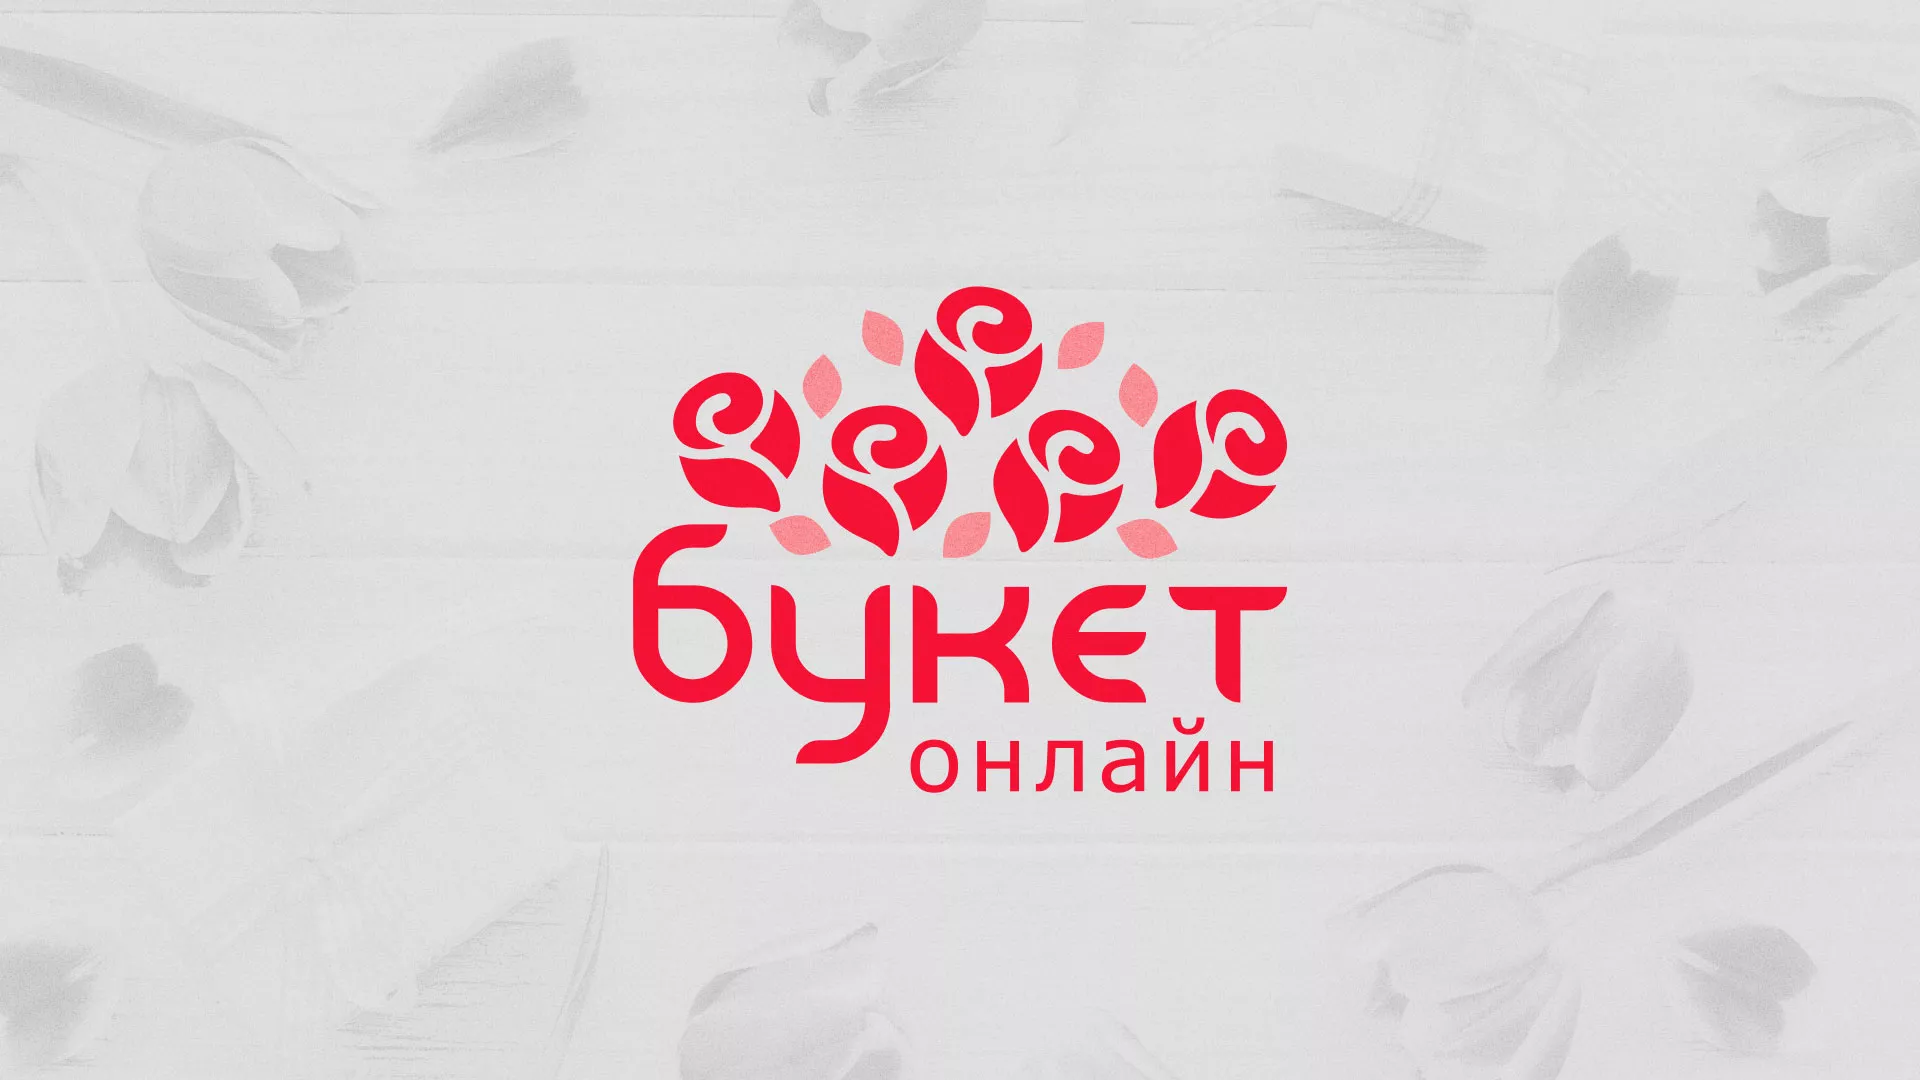 Создание интернет-магазина «Букет-онлайн» по цветам в Кирове